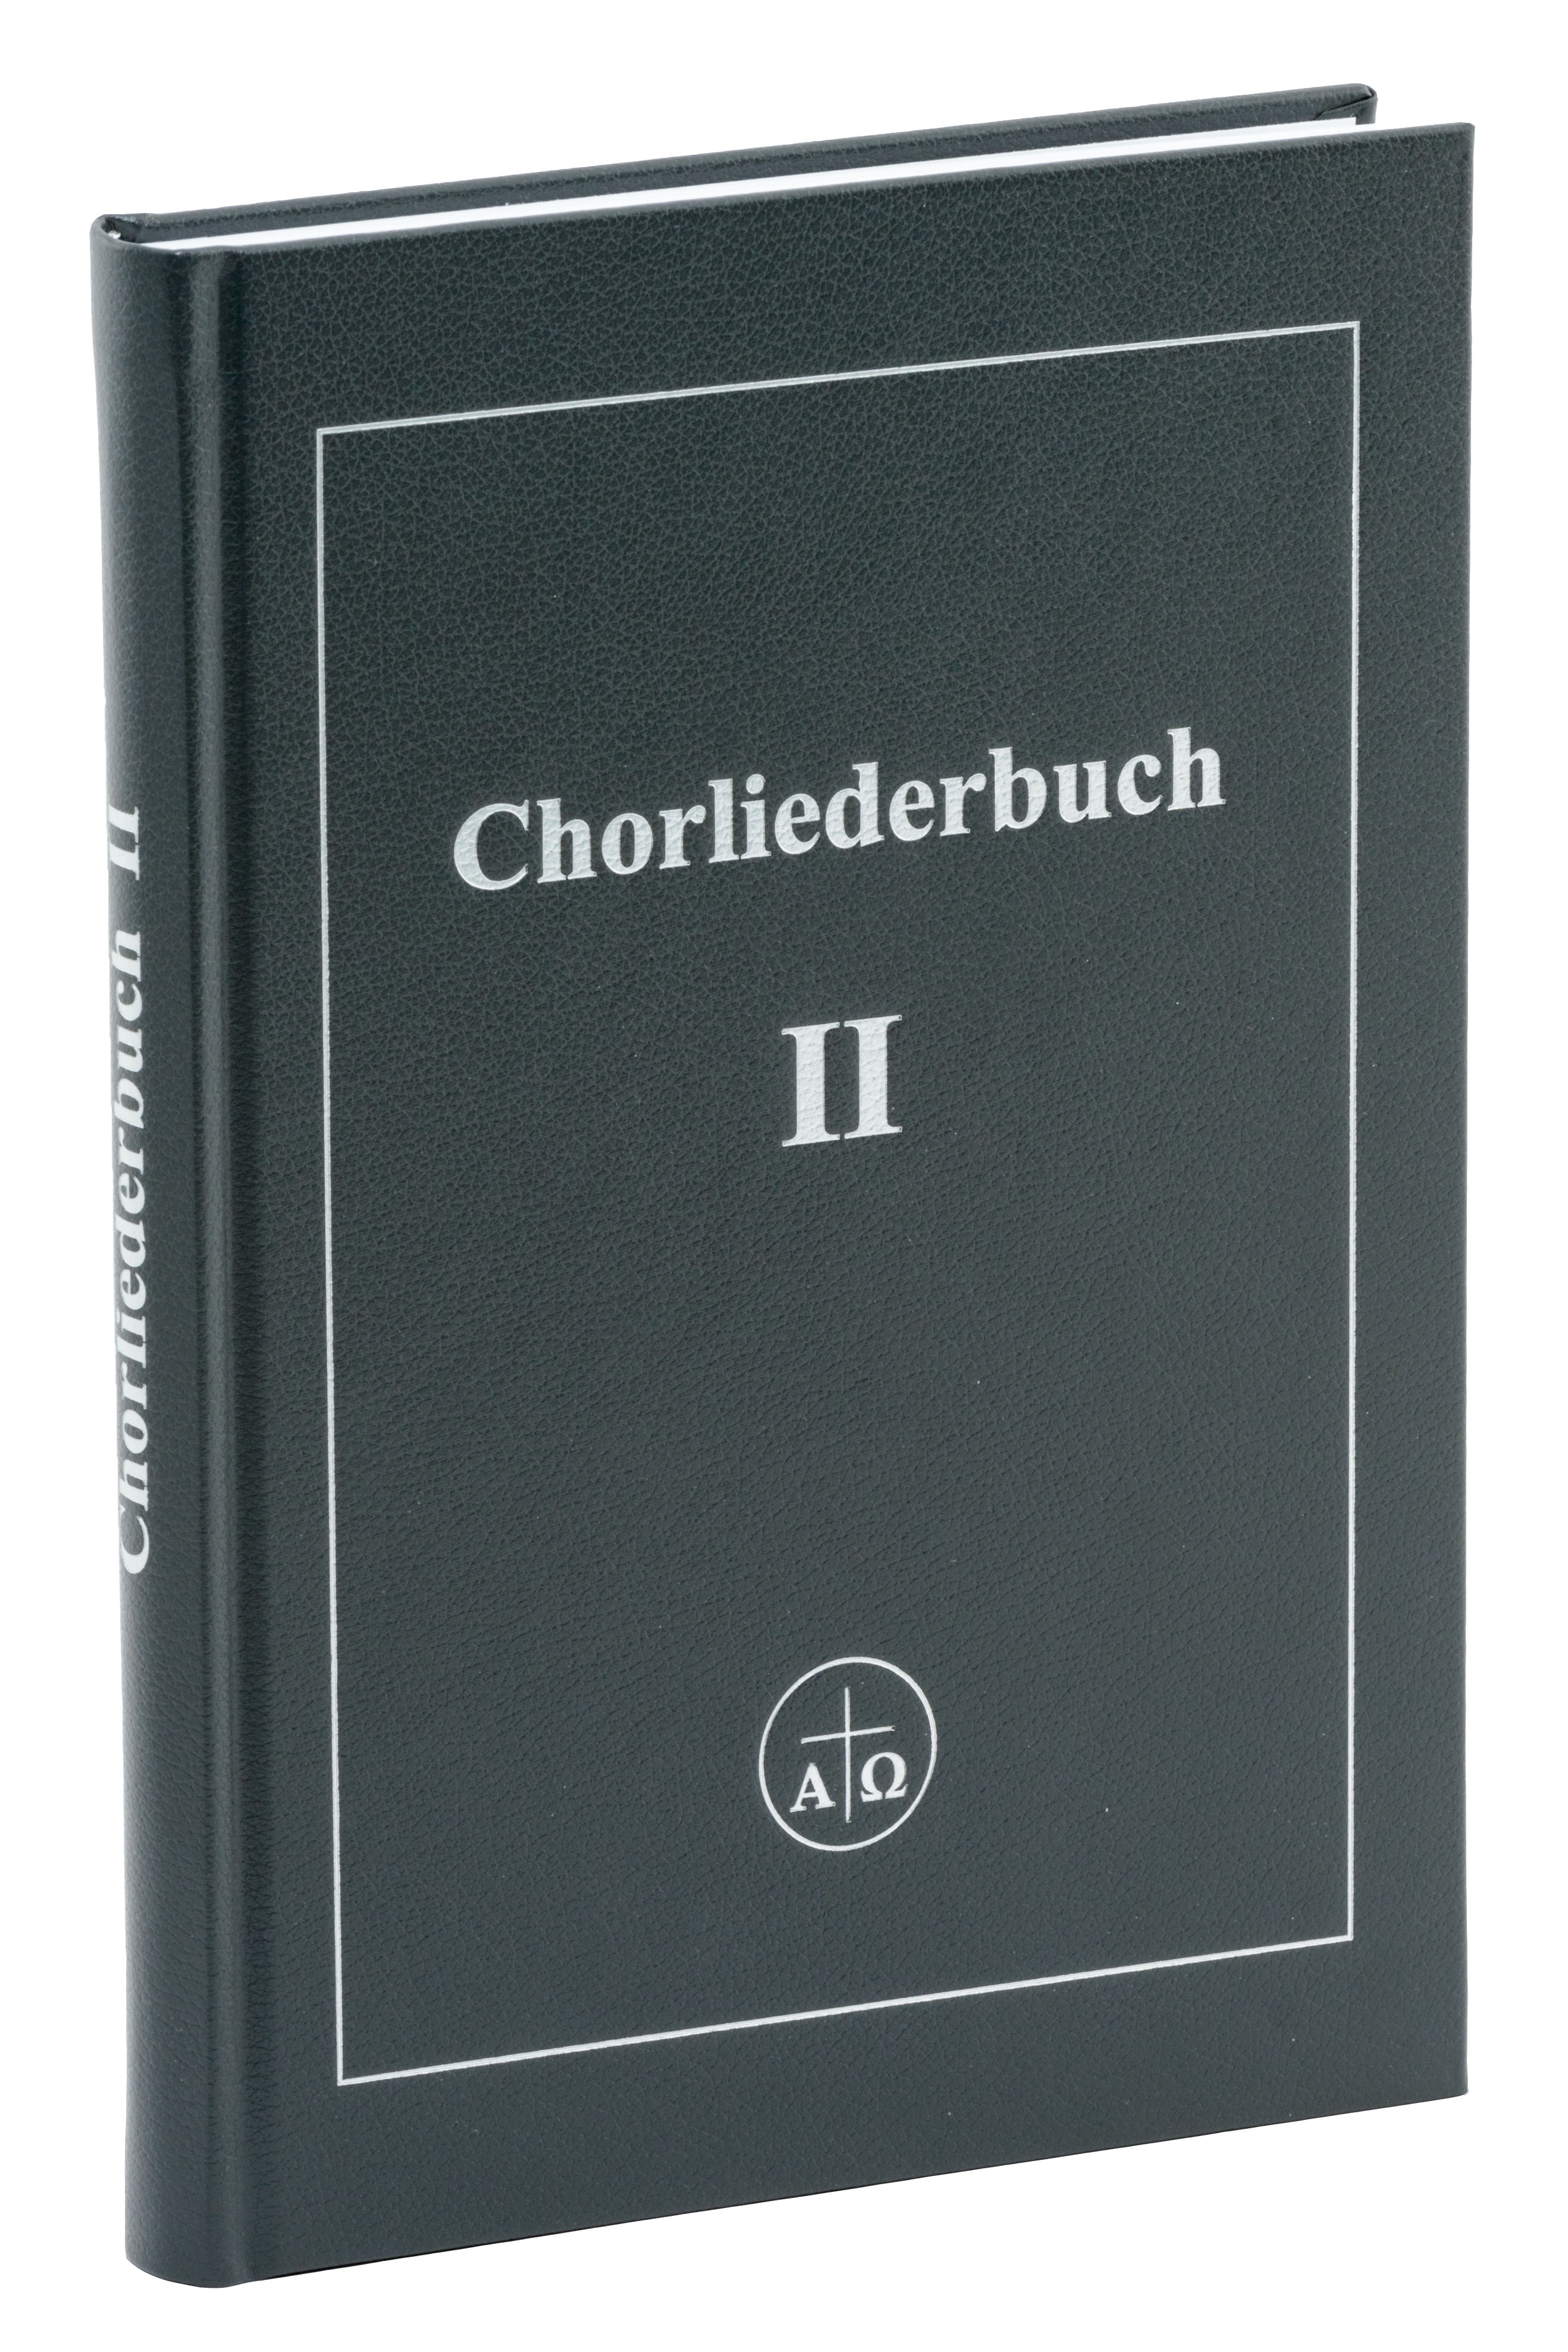 Chorliederbuch 2